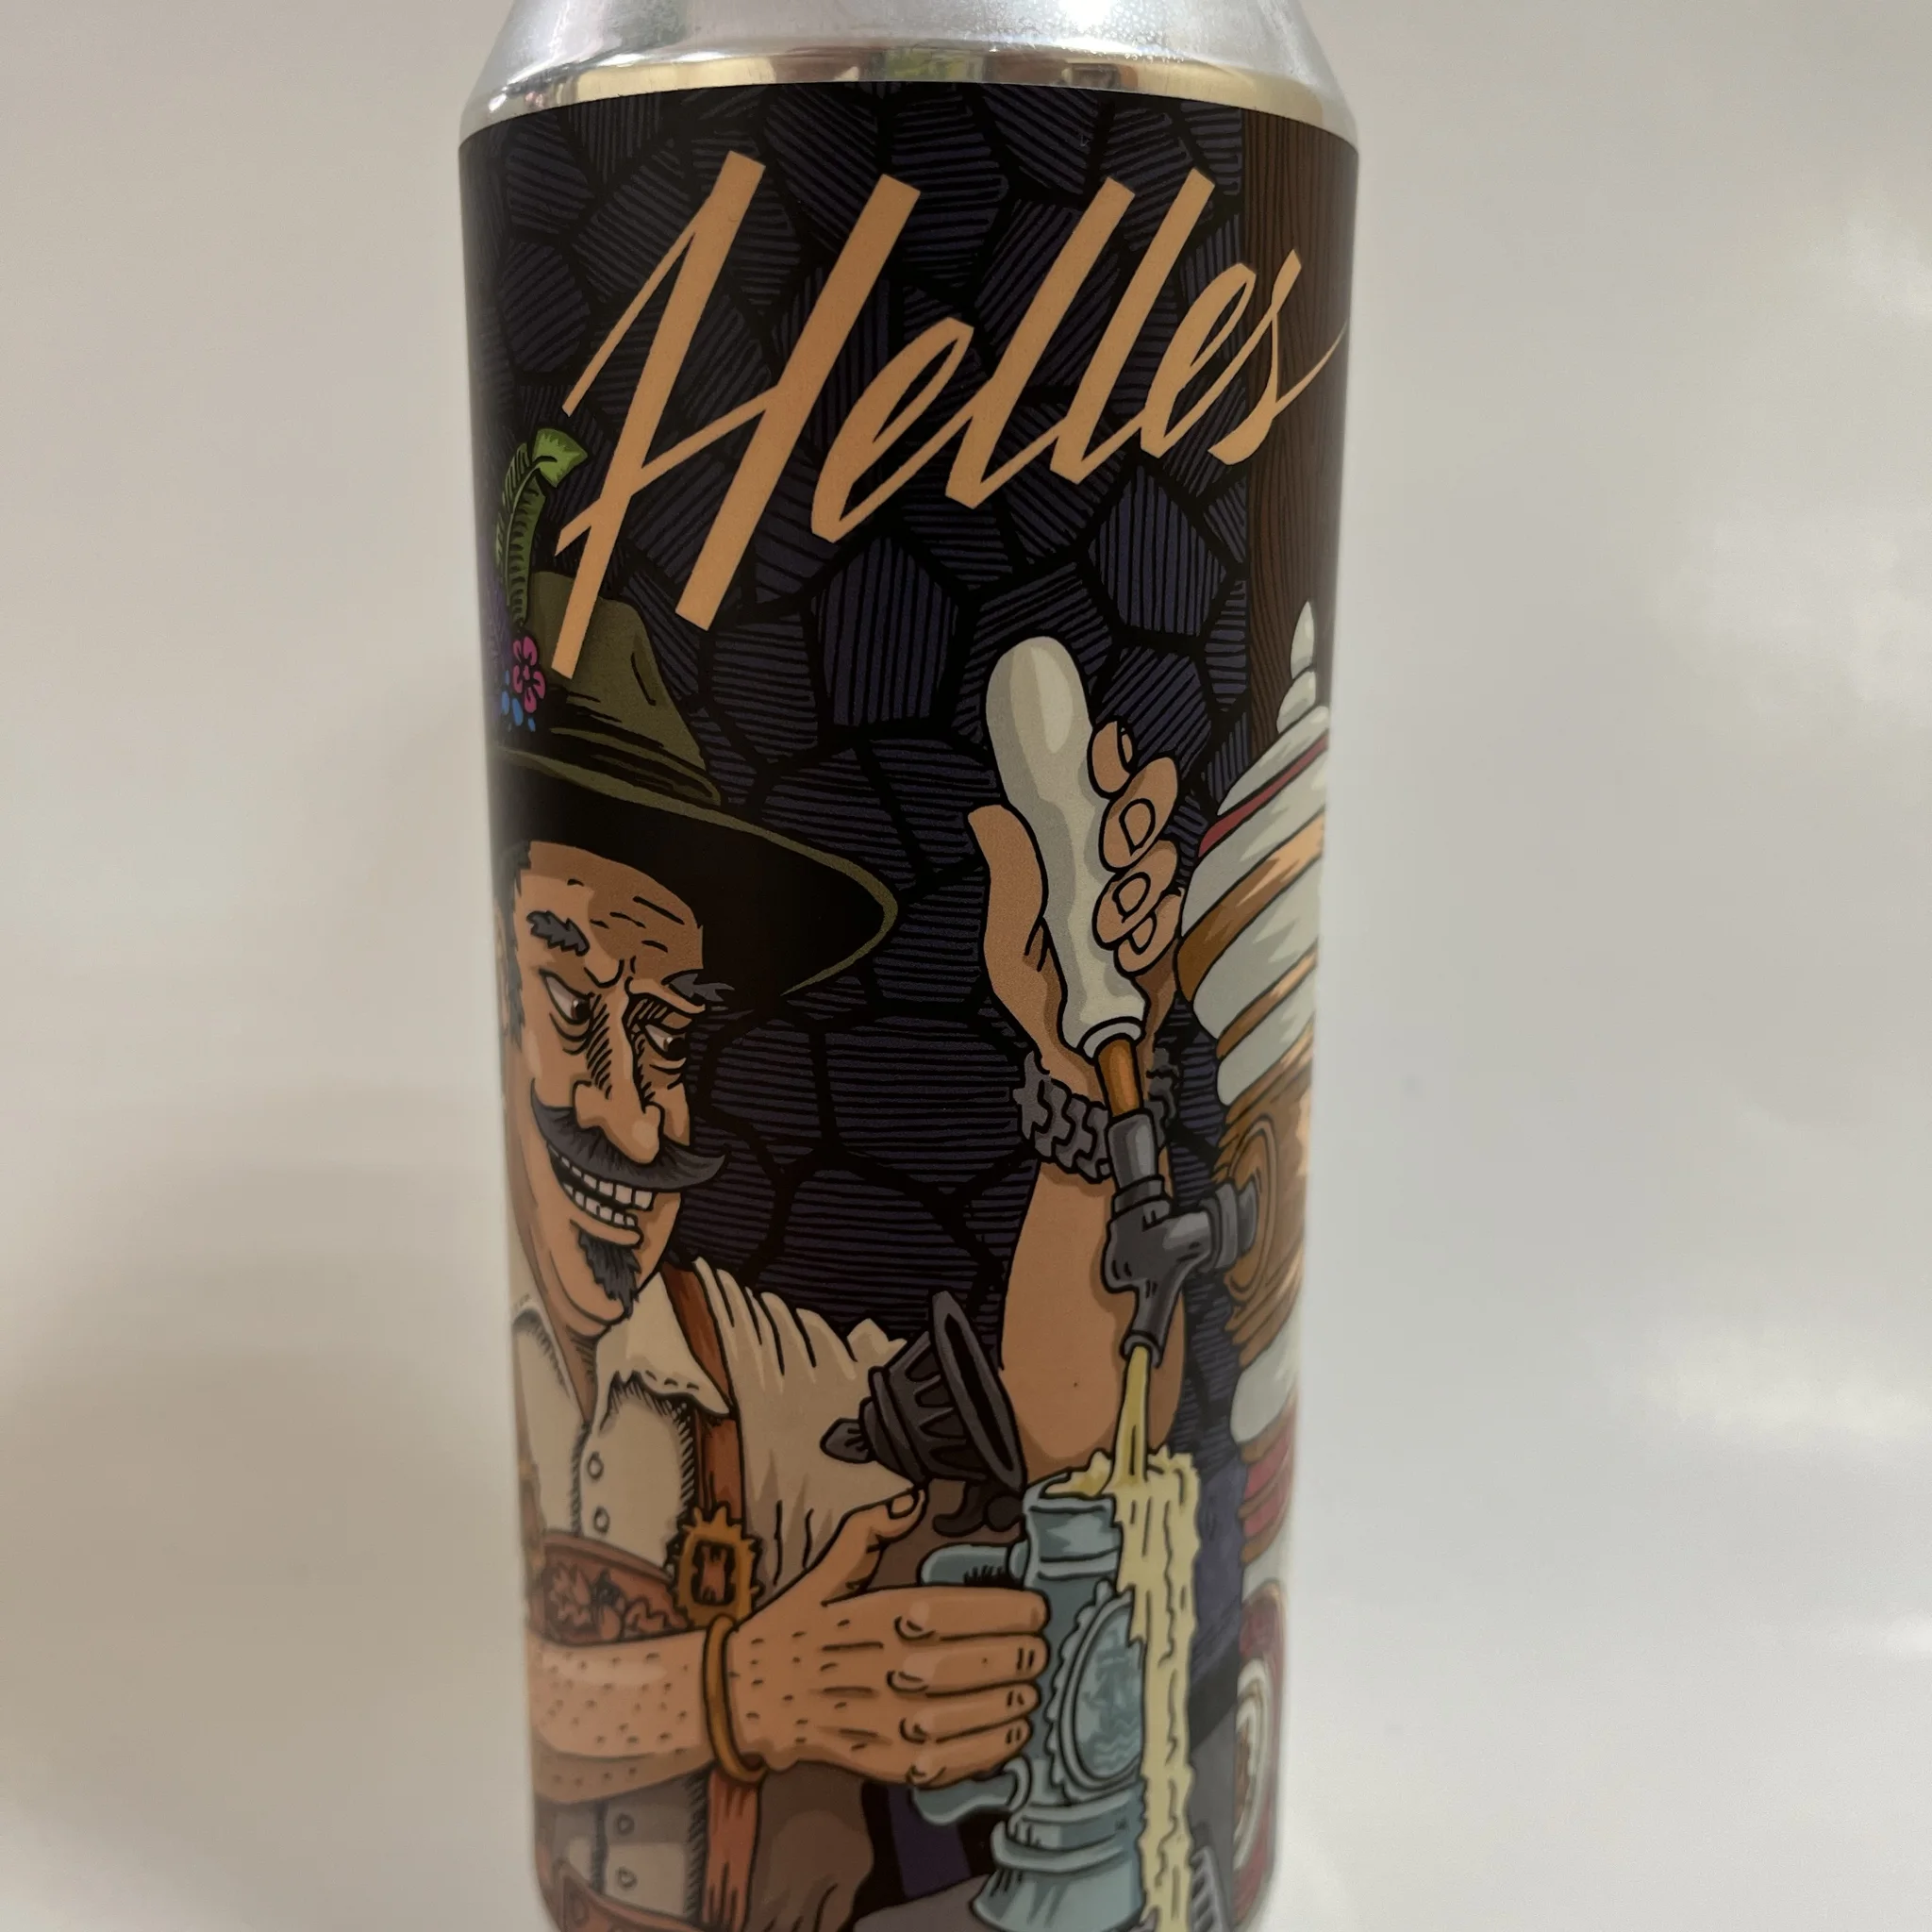 Beer "Bourgeois Helles" (Helles)